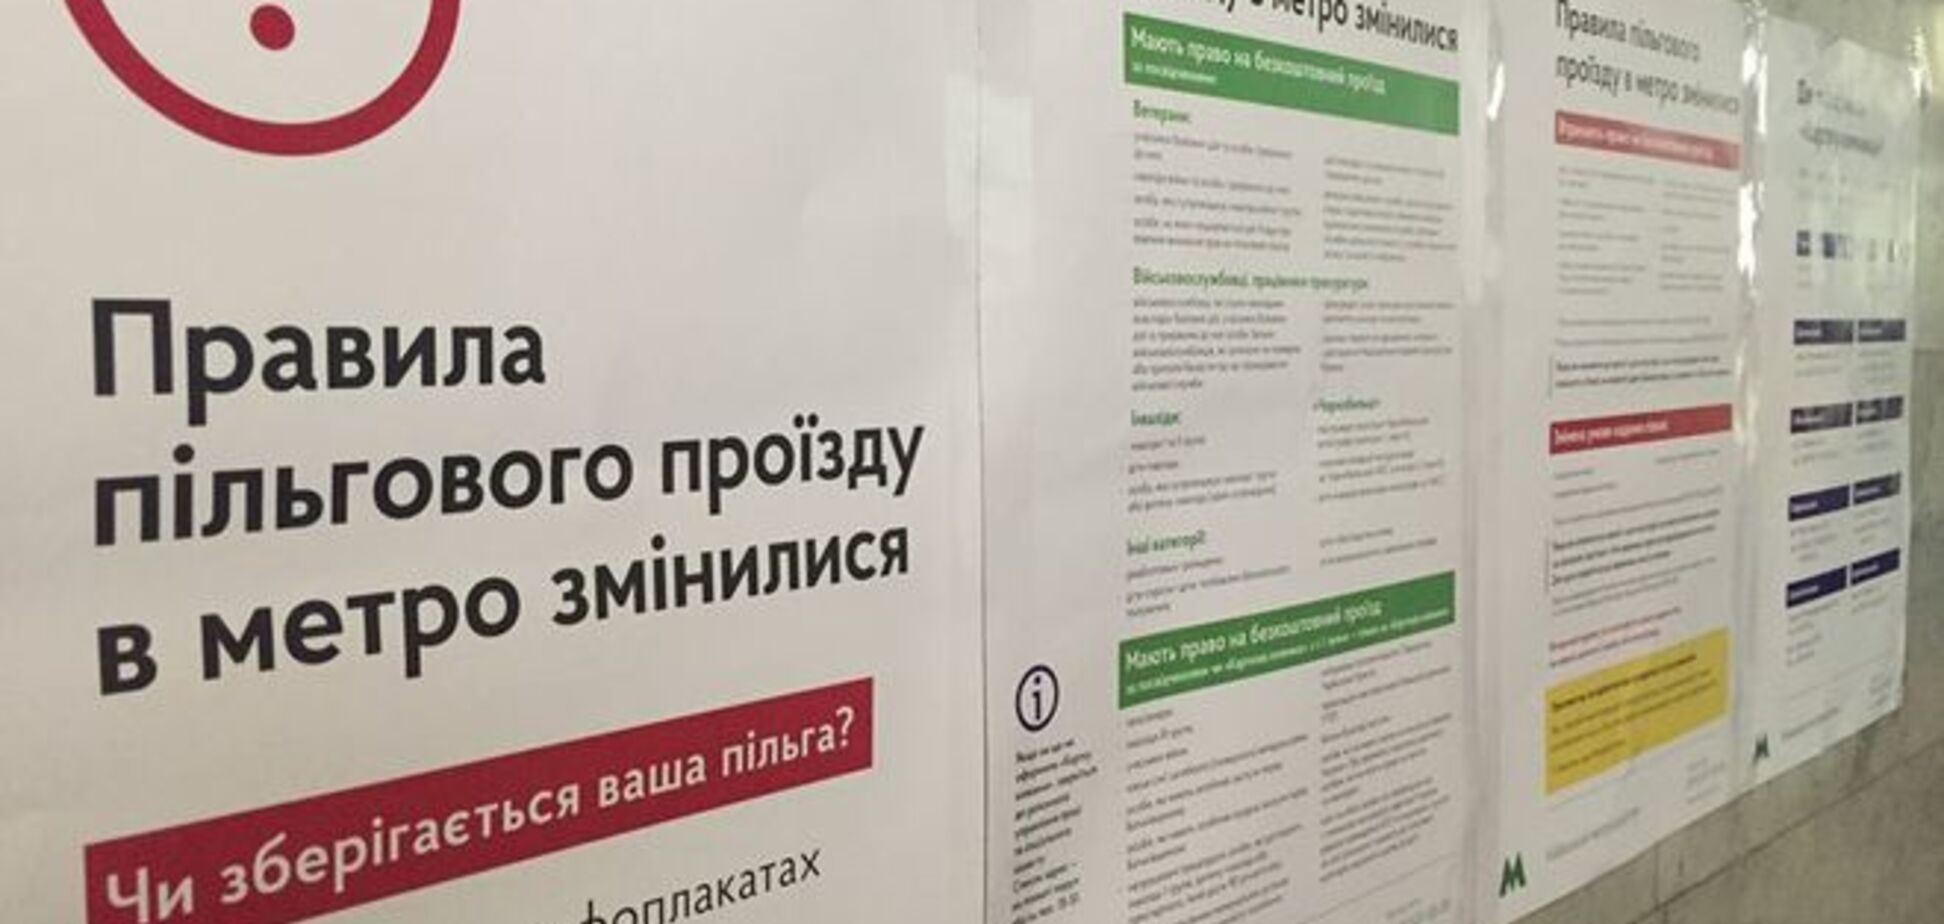 В киевском метро введены новые правила для льготников